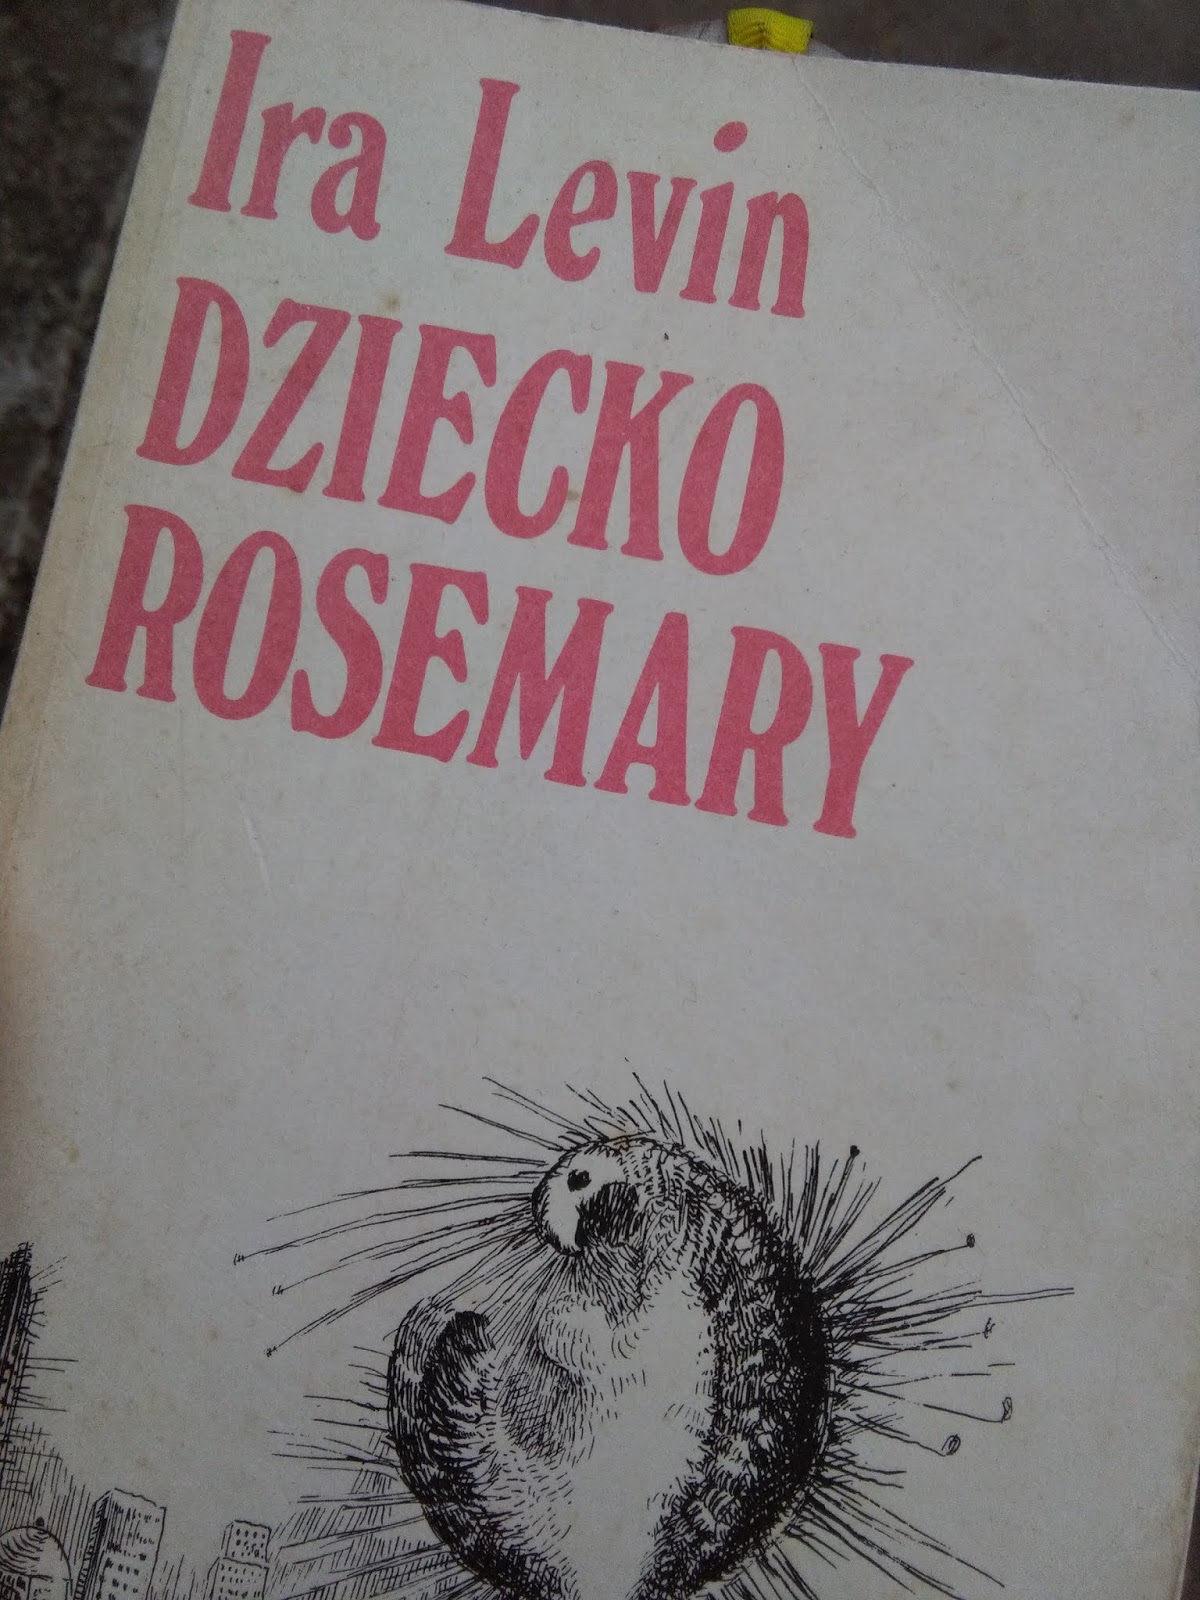 Dziecko Rosemary – Ira Levin